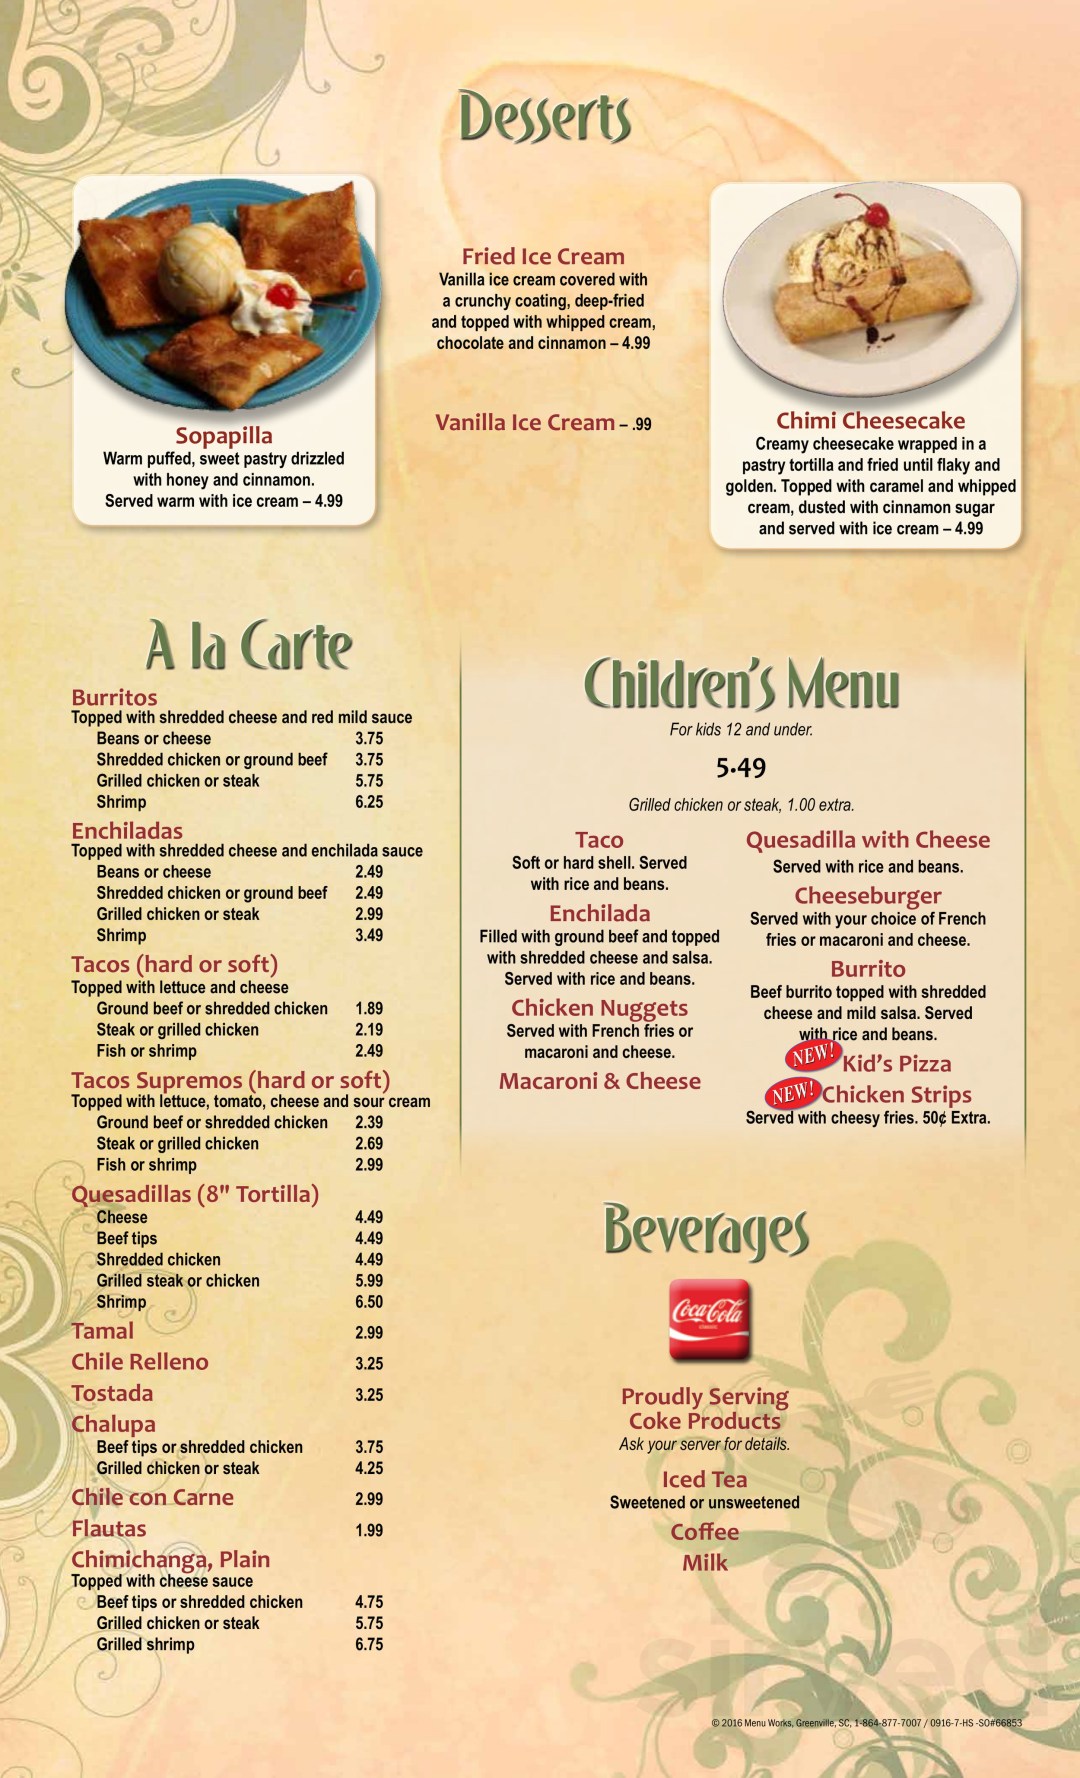 Picture of: El Tapatio of Sikeston menu in Sikeston, Missouri, USA